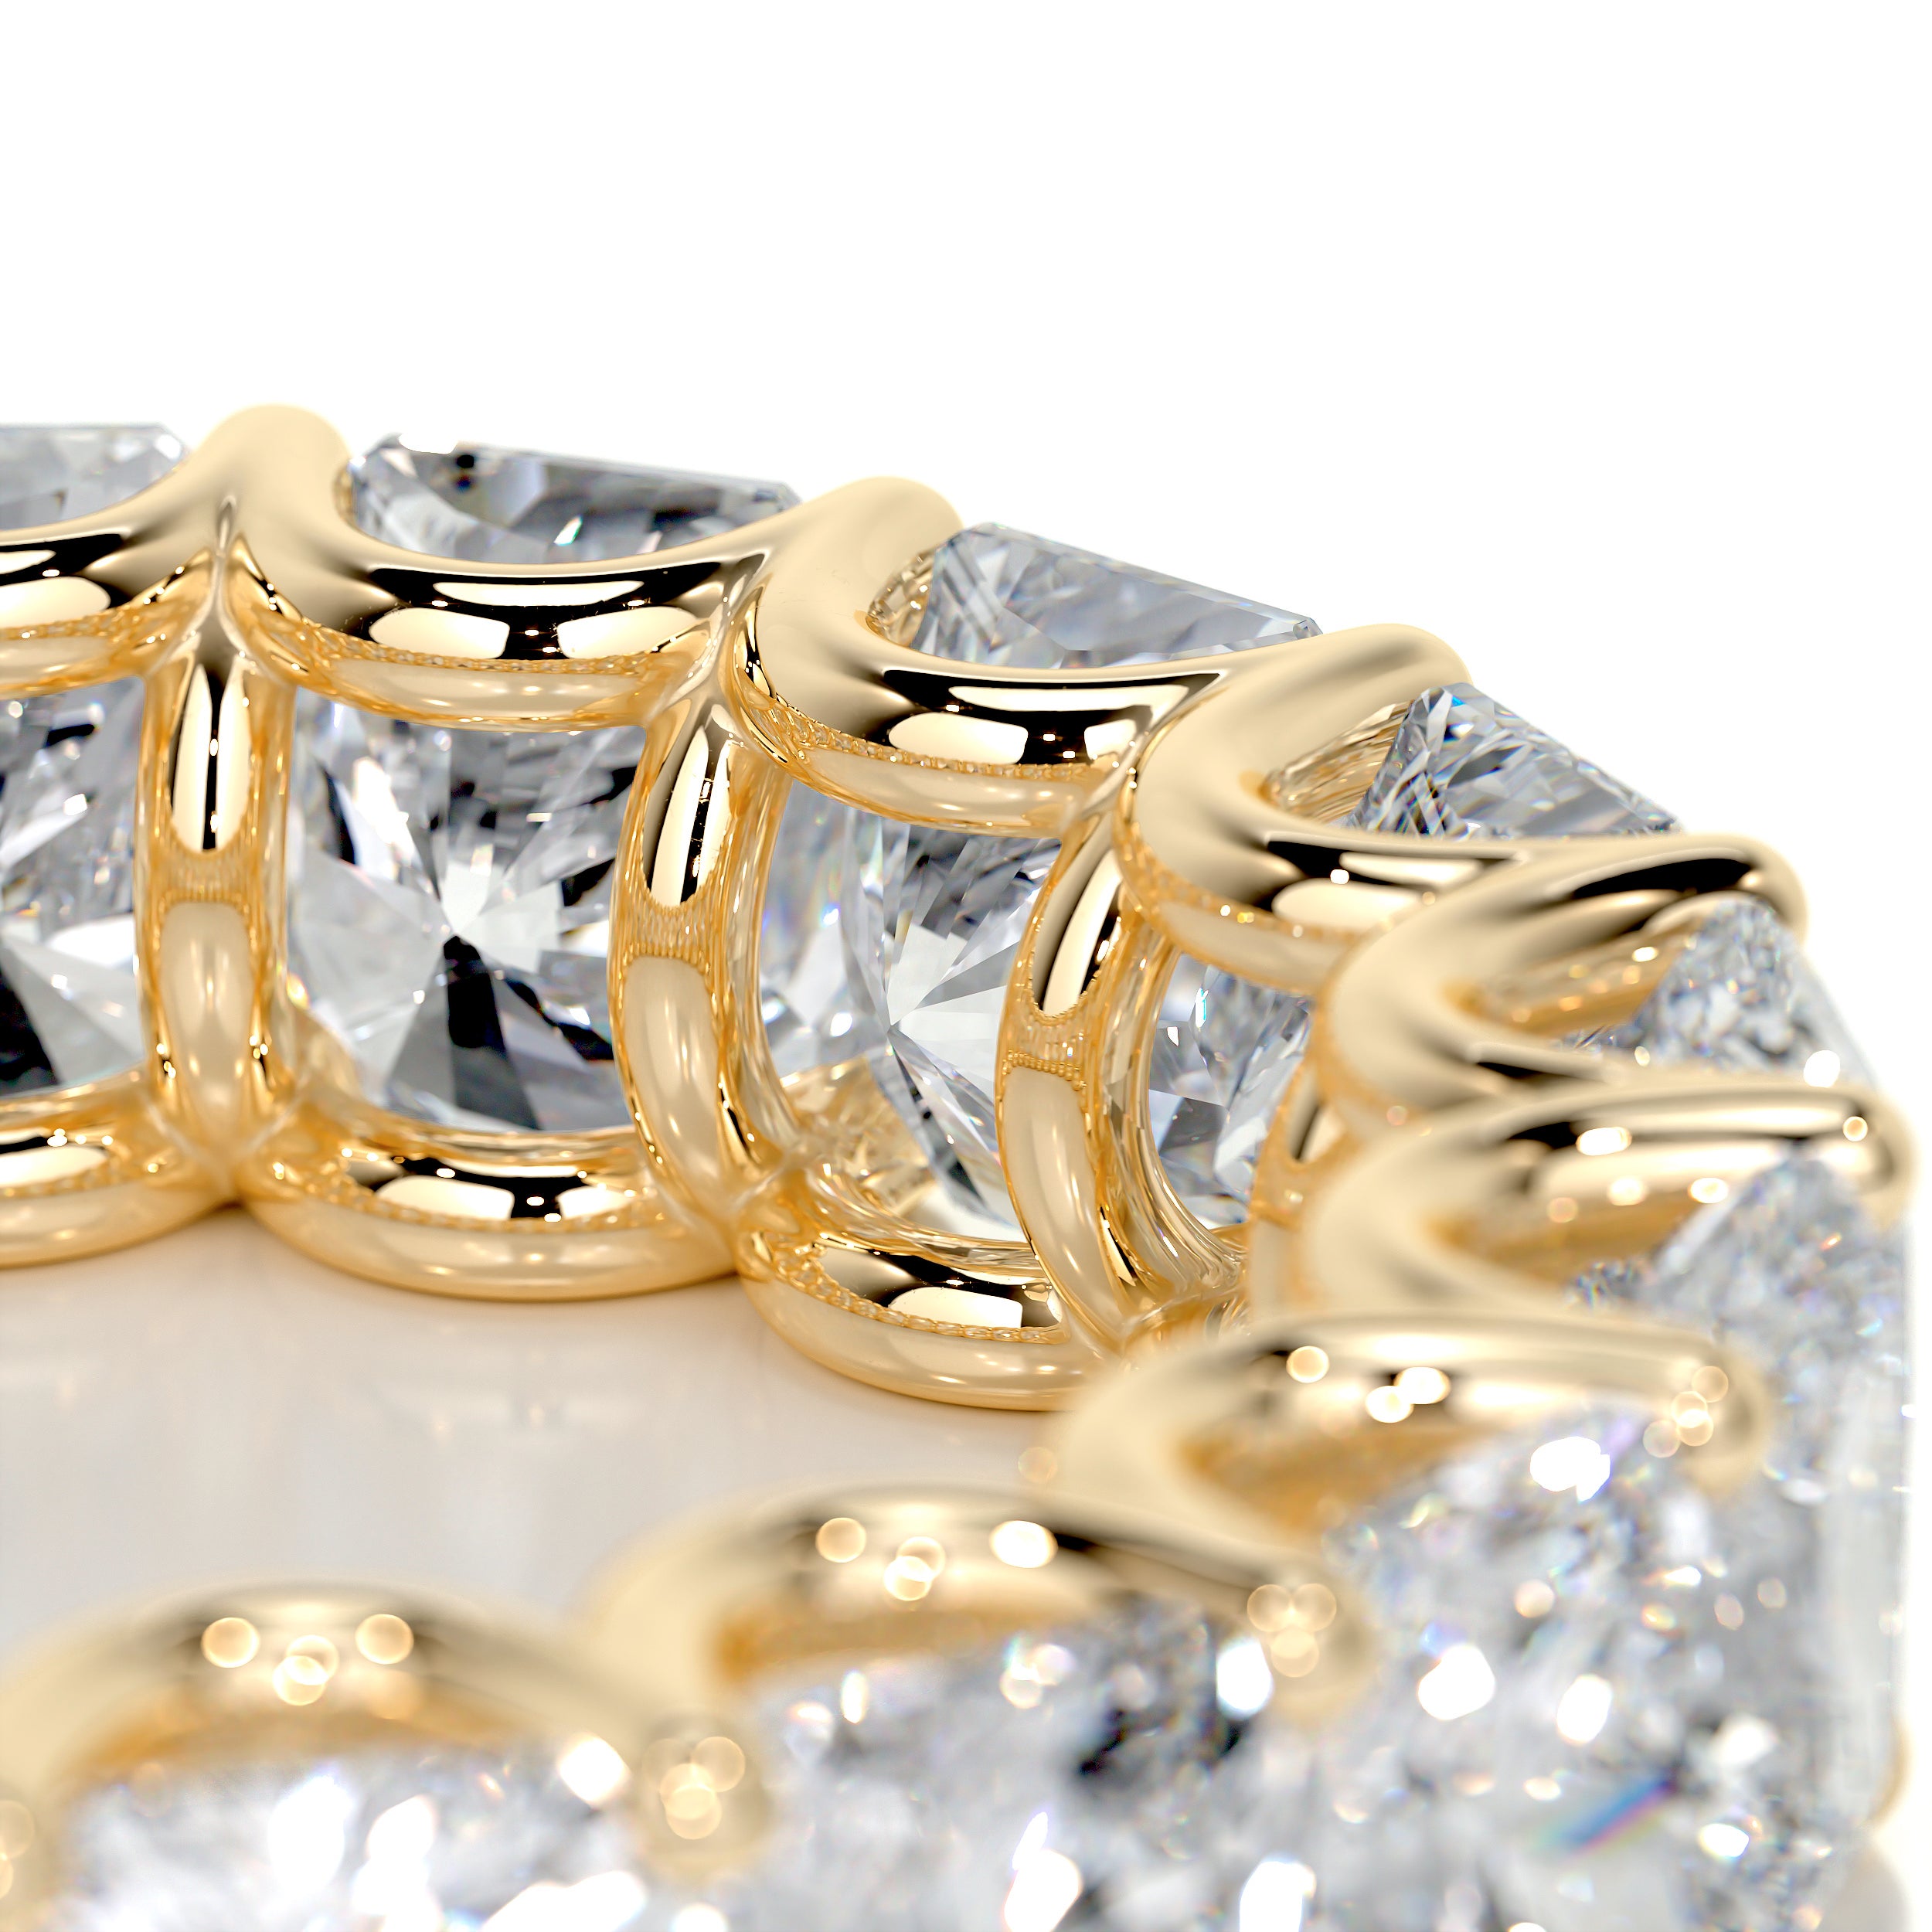 Andi Eternity Wedding Ring   (5 Carat) - 18K Yellow Gold